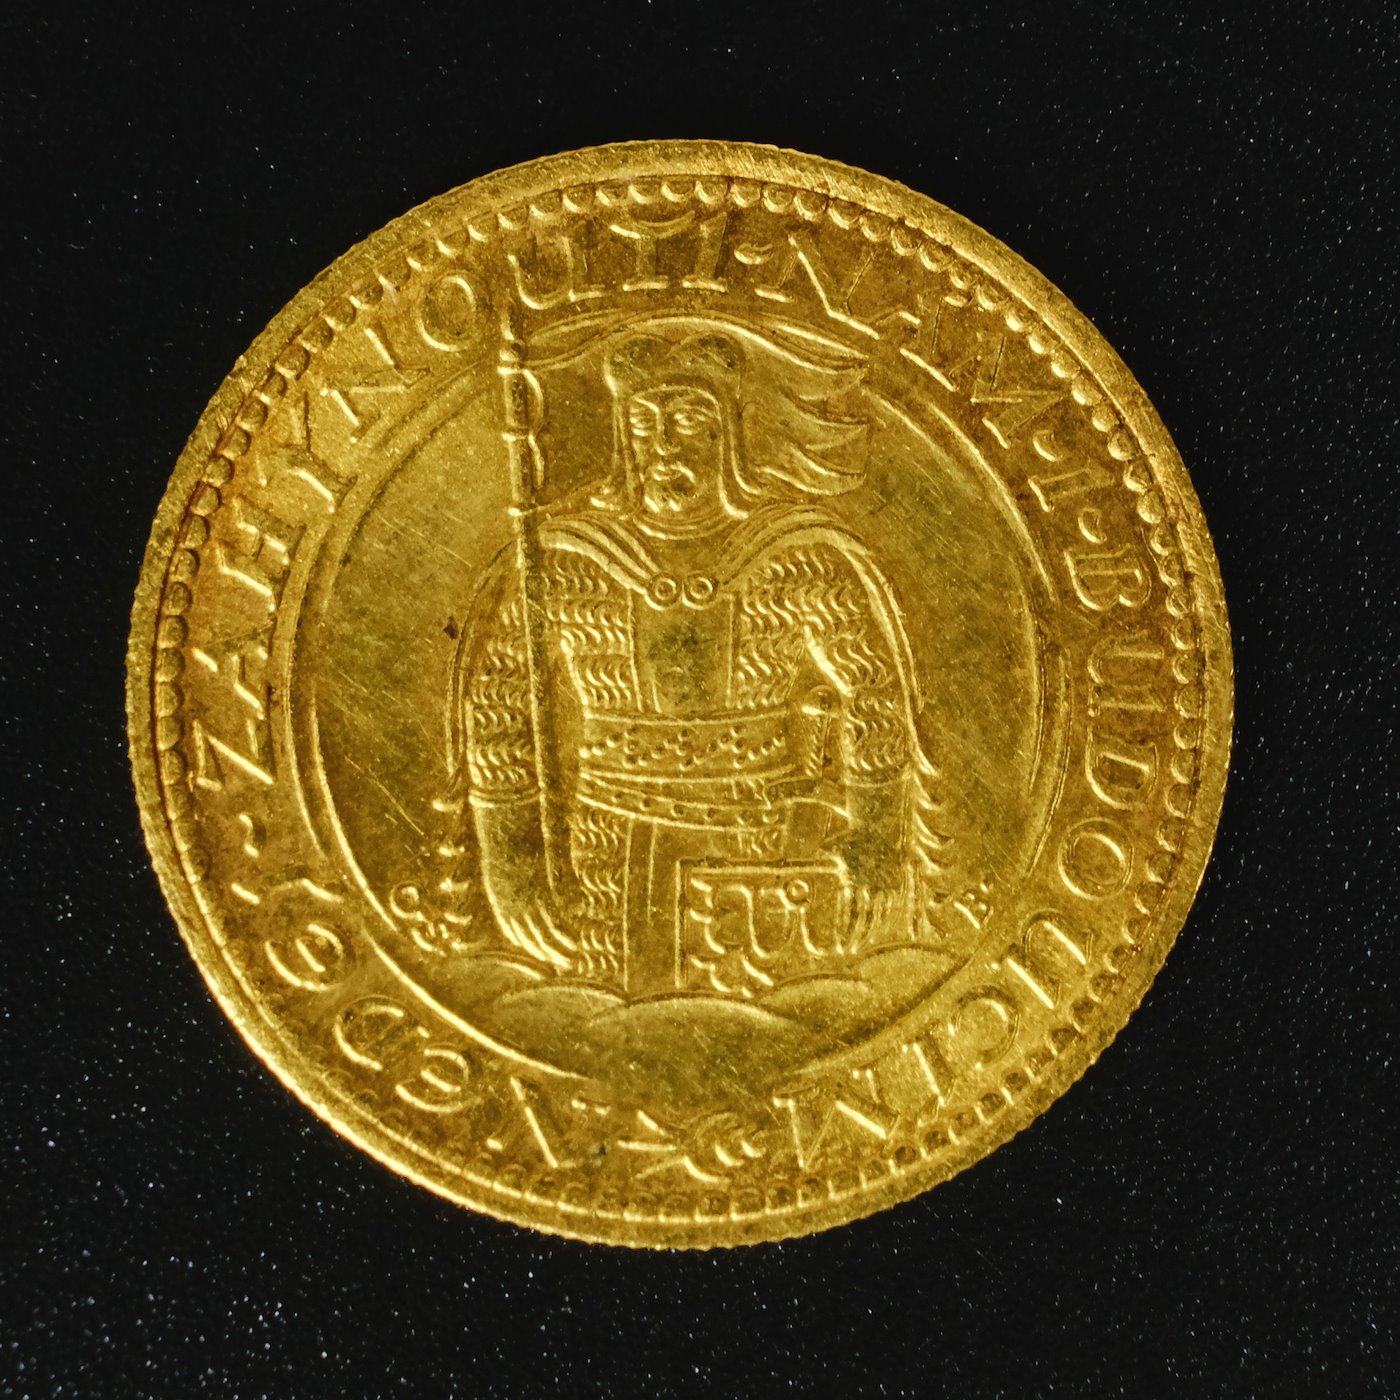 Mince - Československá republika Svatováclavský dukát 1925. Zlato 986/1000, hrubá hmotnost mince 3,49g